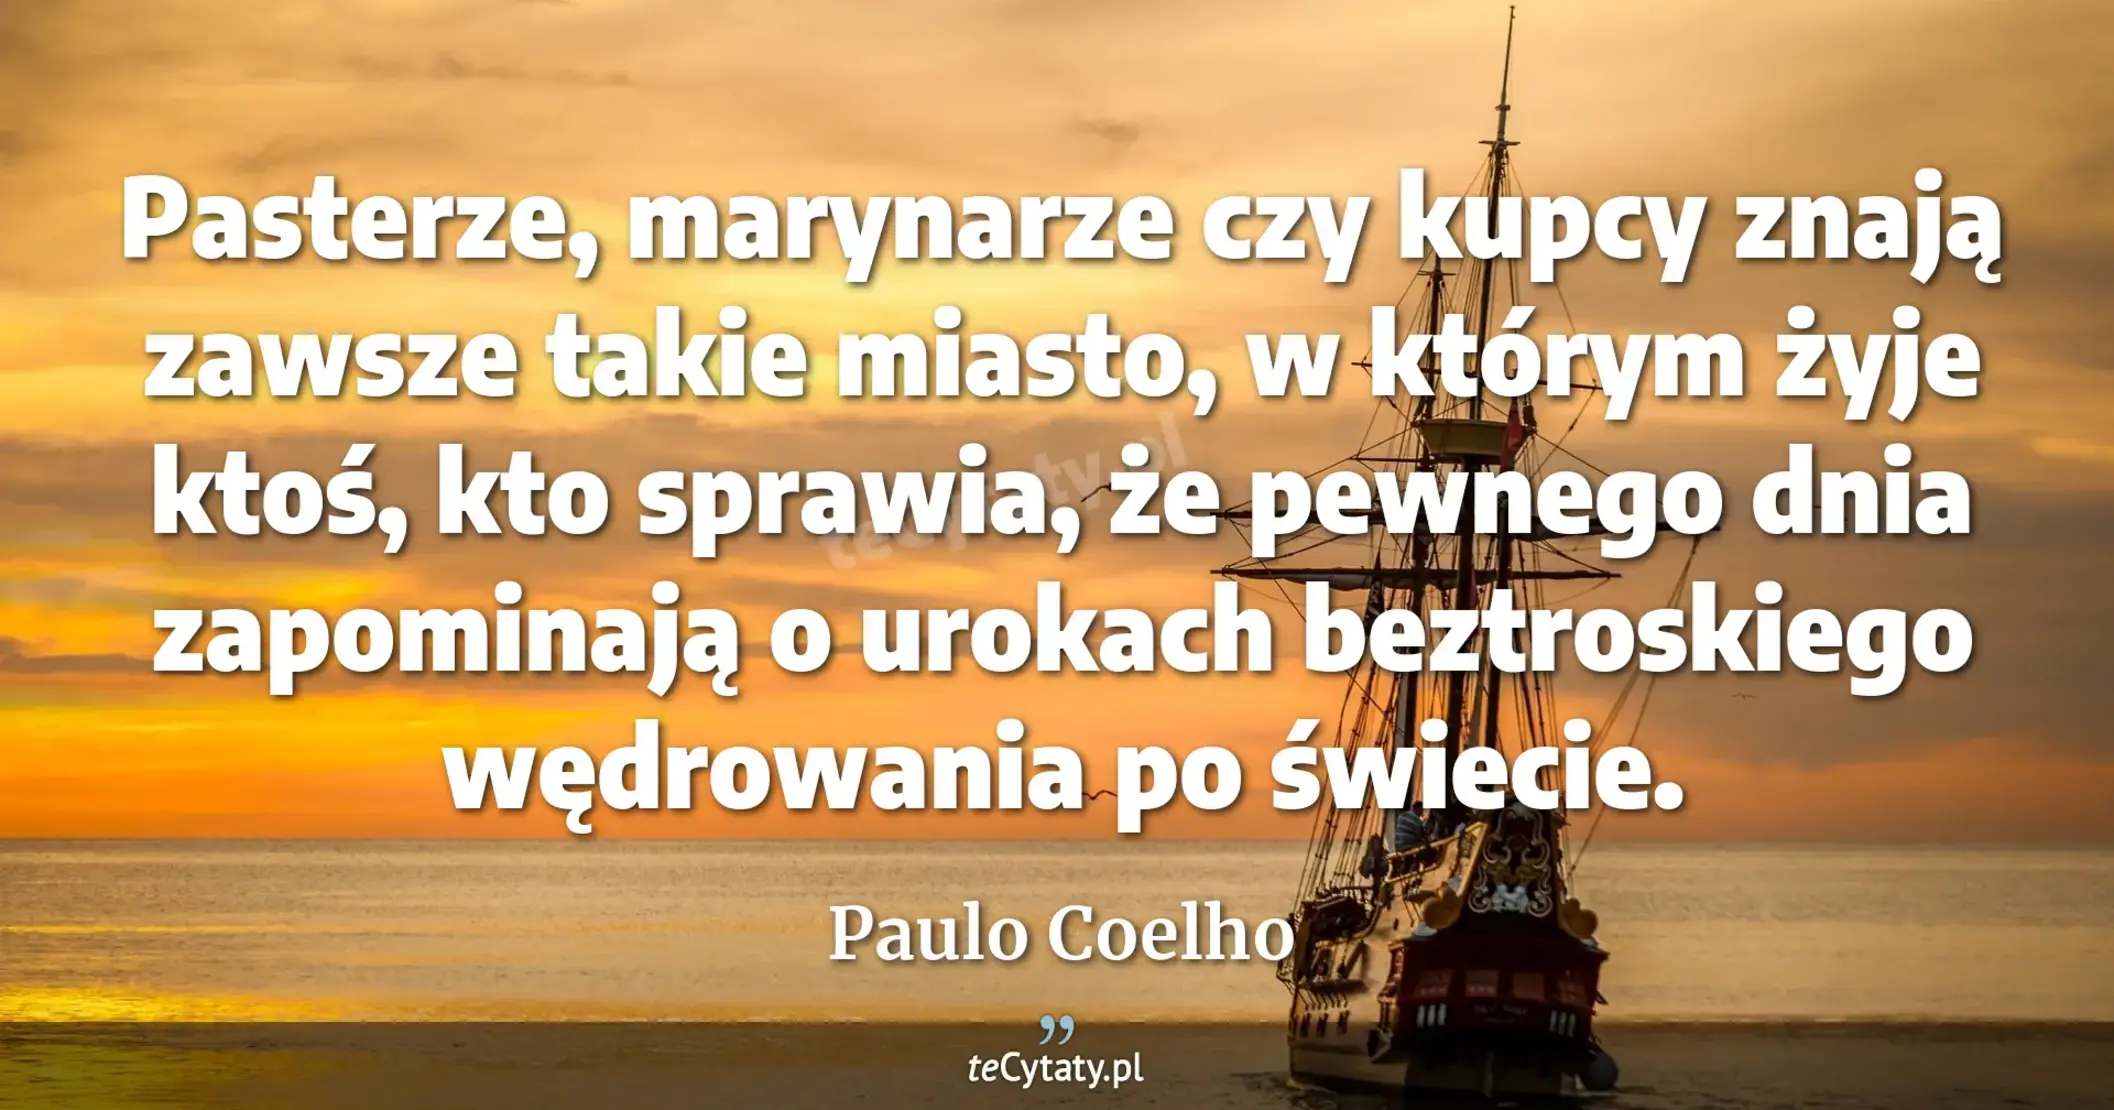 Pasterze, marynarze czy kupcy znają zawsze takie miasto, w którym żyje ktoś, kto sprawia, że pewnego dnia zapominają o urokach beztroskiego wędrowania po świecie. - Paulo Coelho